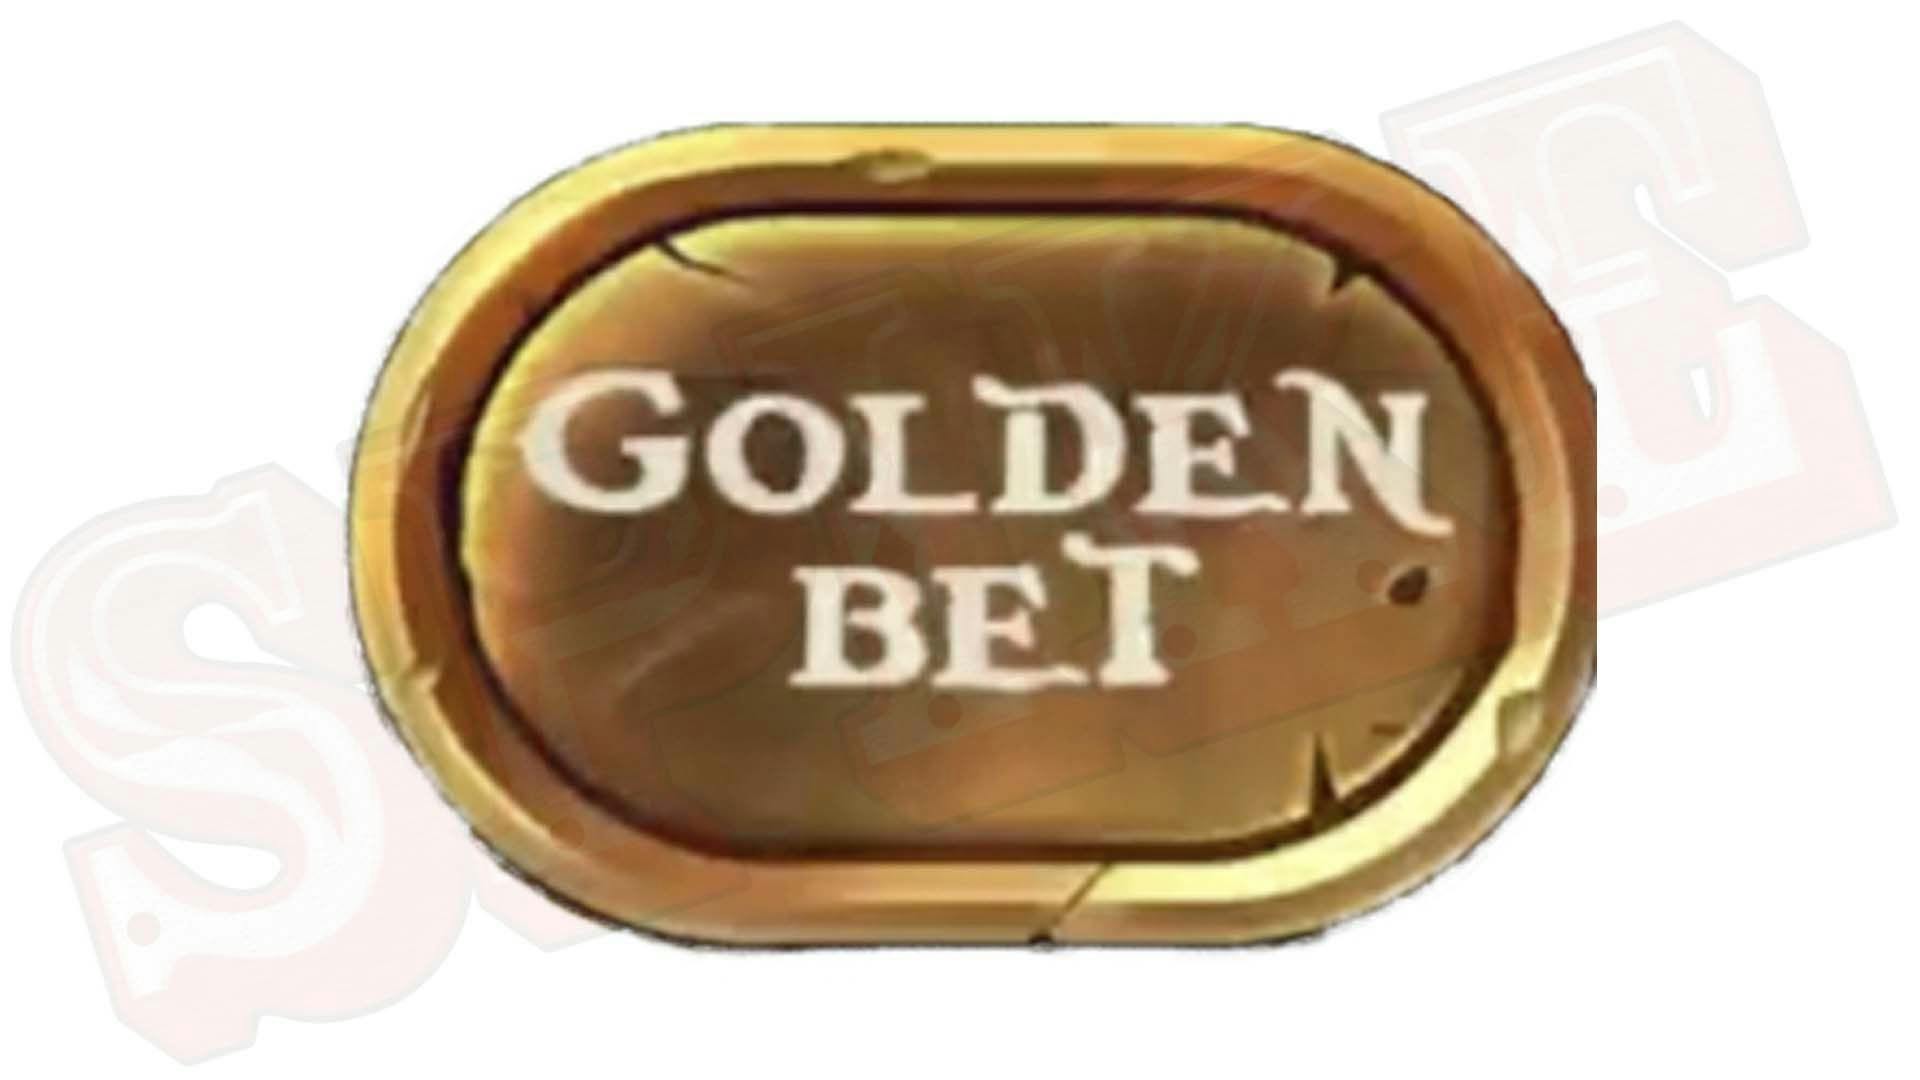 Barbarossa DoubleMax Slot Golden Bet